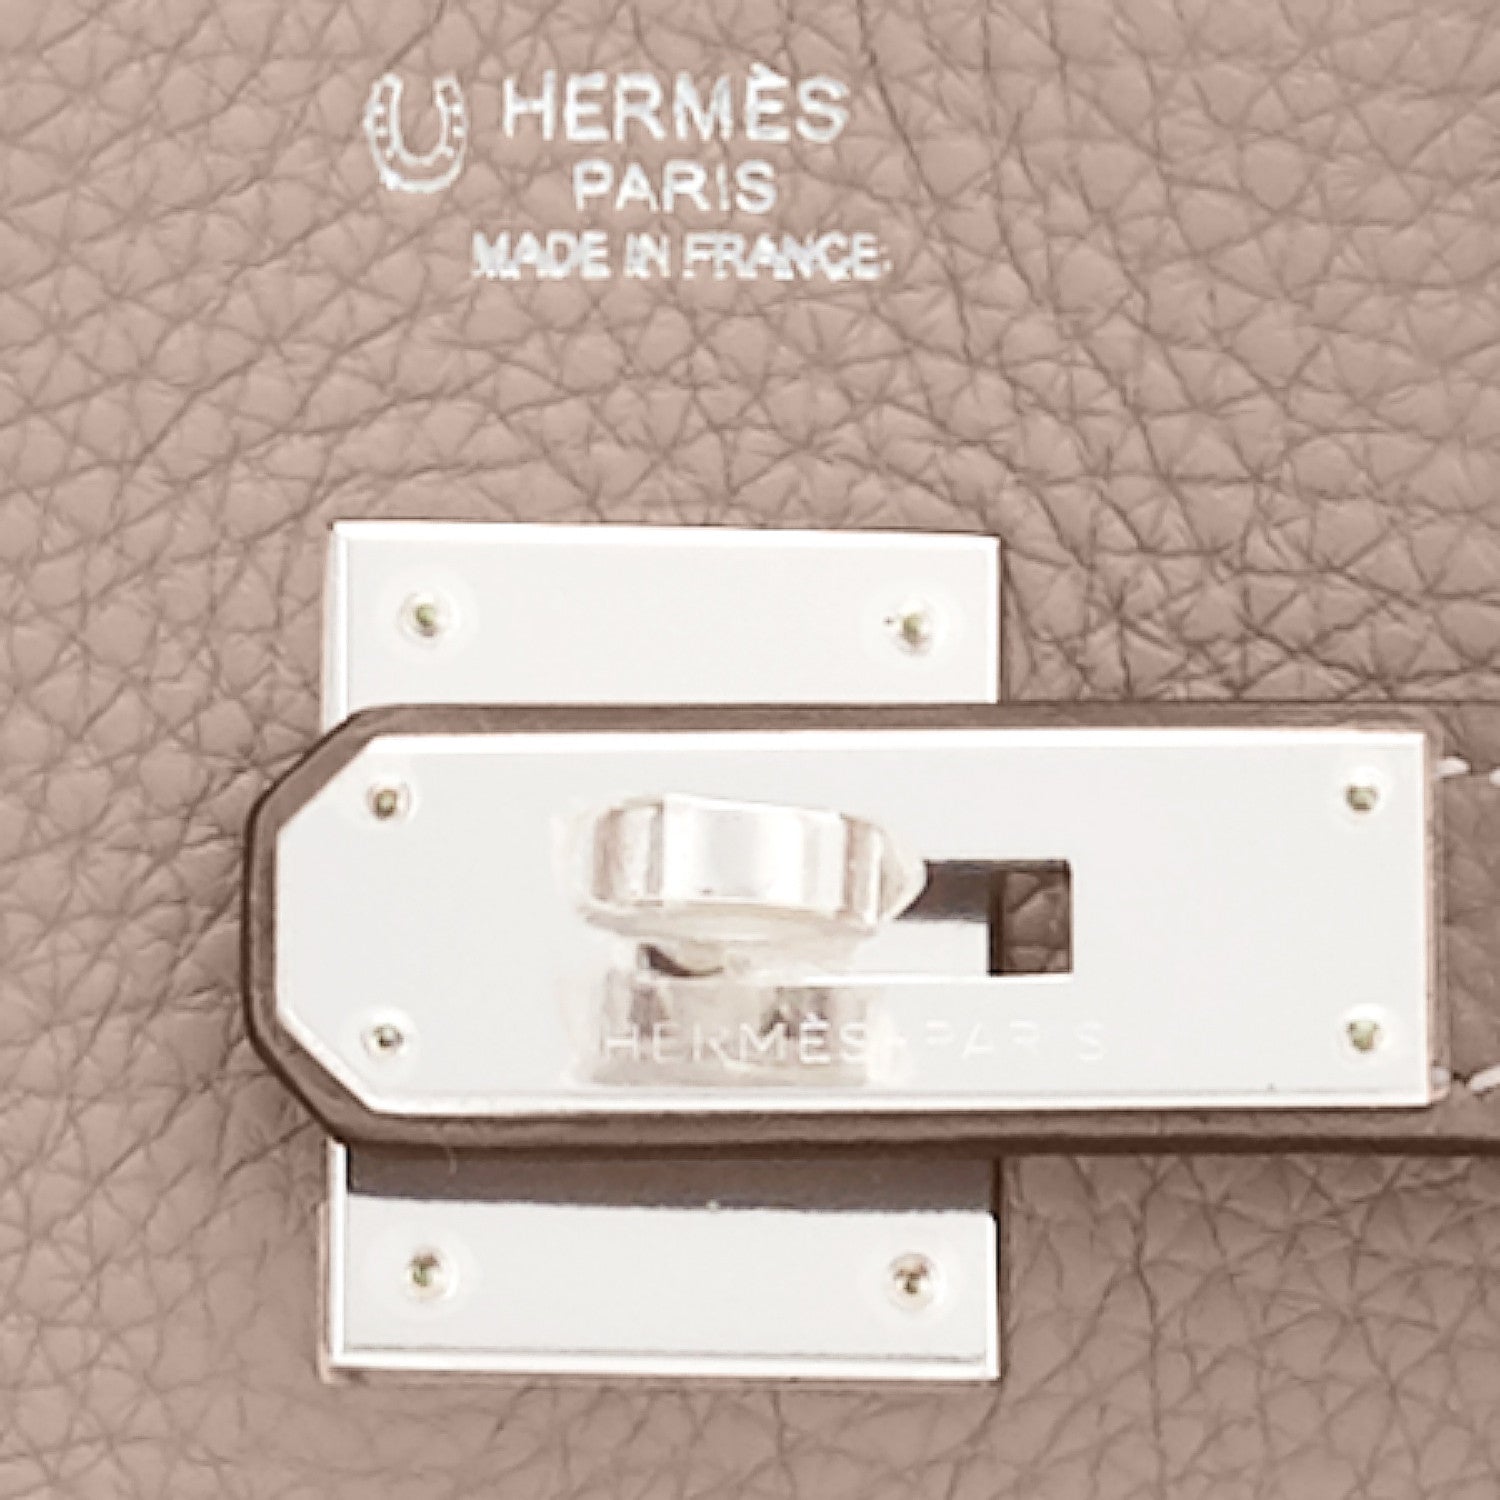 Hermes Birkin 35 Gris Tourterelle Etoupe Special Order Bag